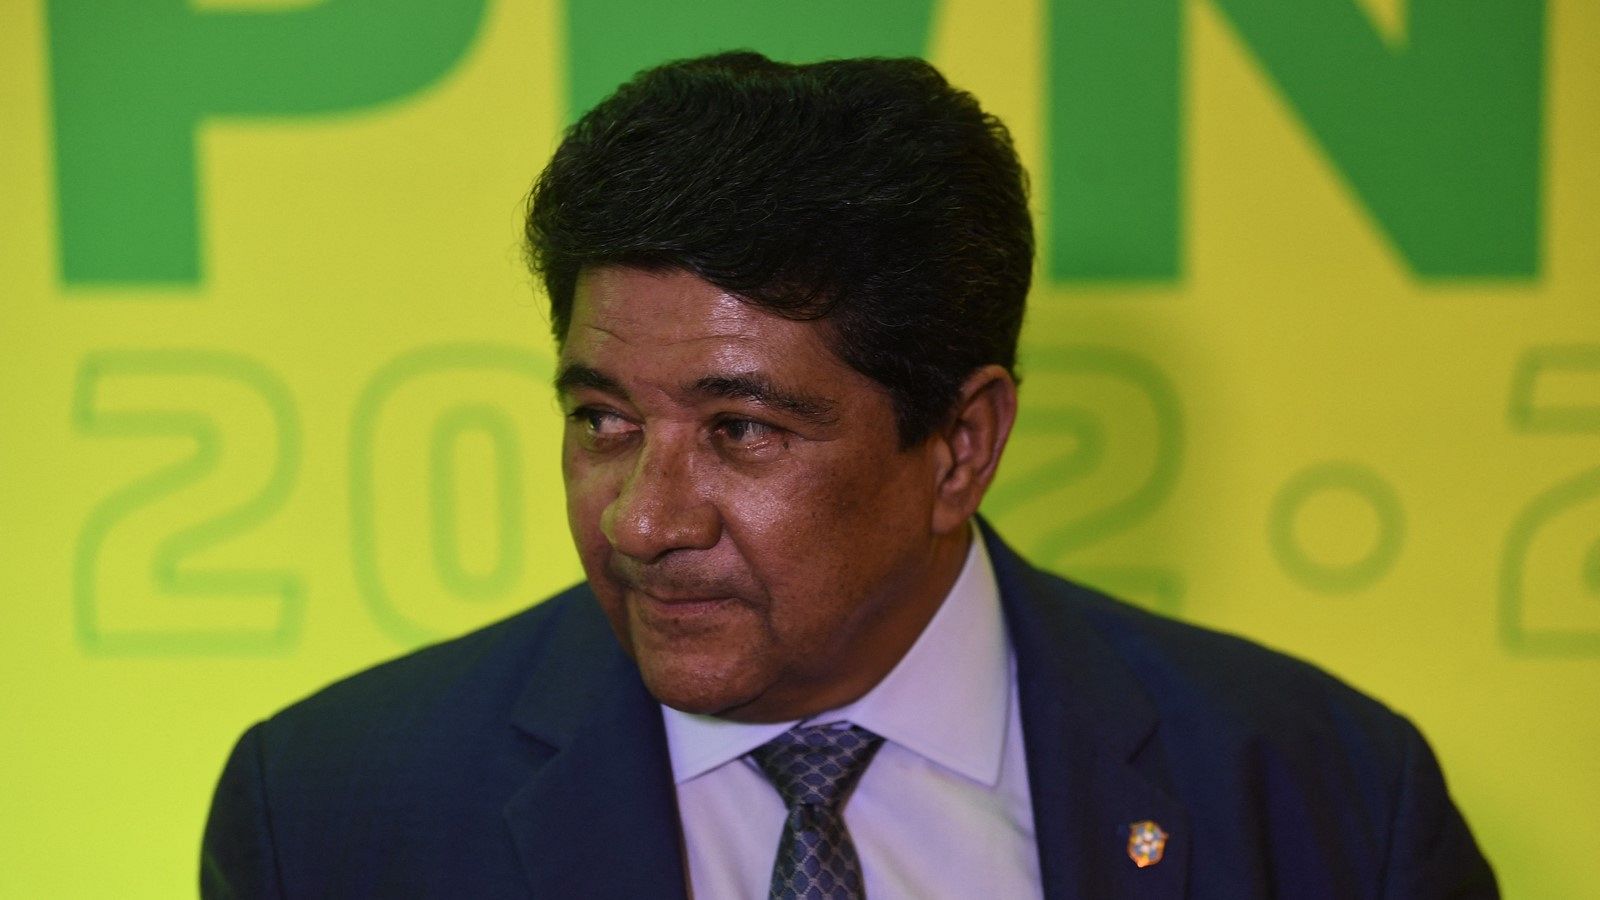 stituye a Ednaldo Rodrigues, presidente de la Federación brasileña de Fútbol